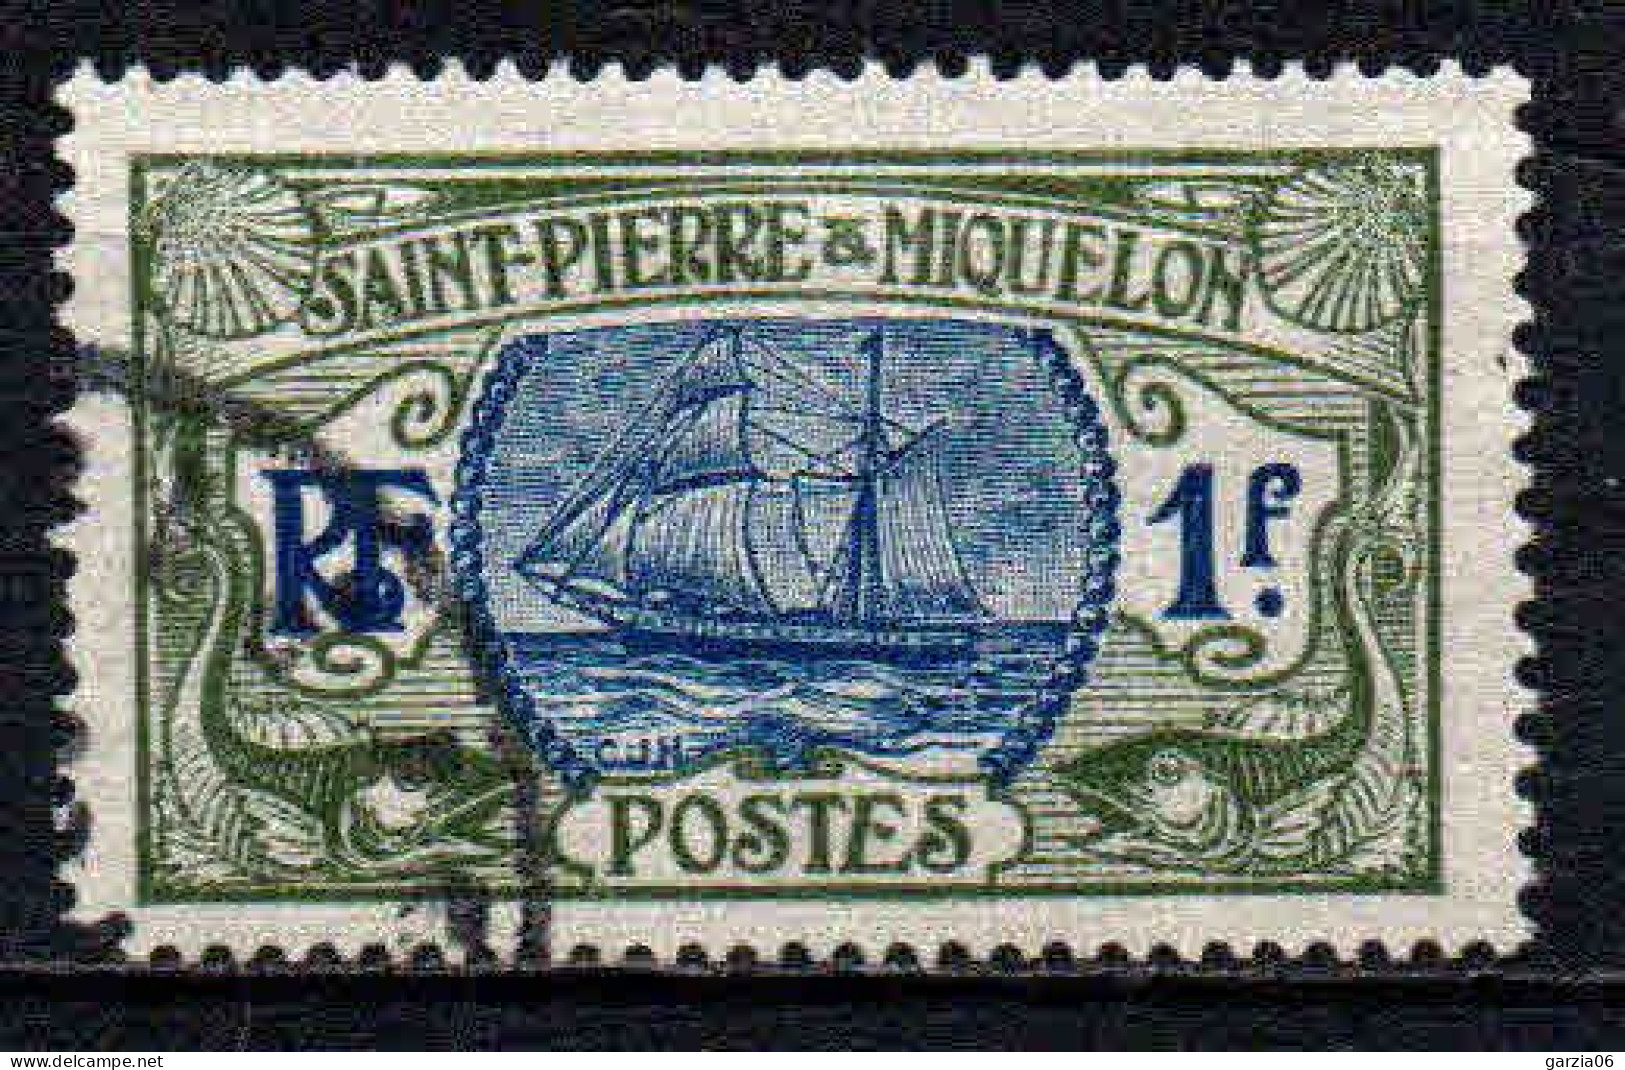 St Pierre Et Miquelon    - 1909 - Bateau De Pèche   - N° 91 - Oblit - Used - Gebruikt